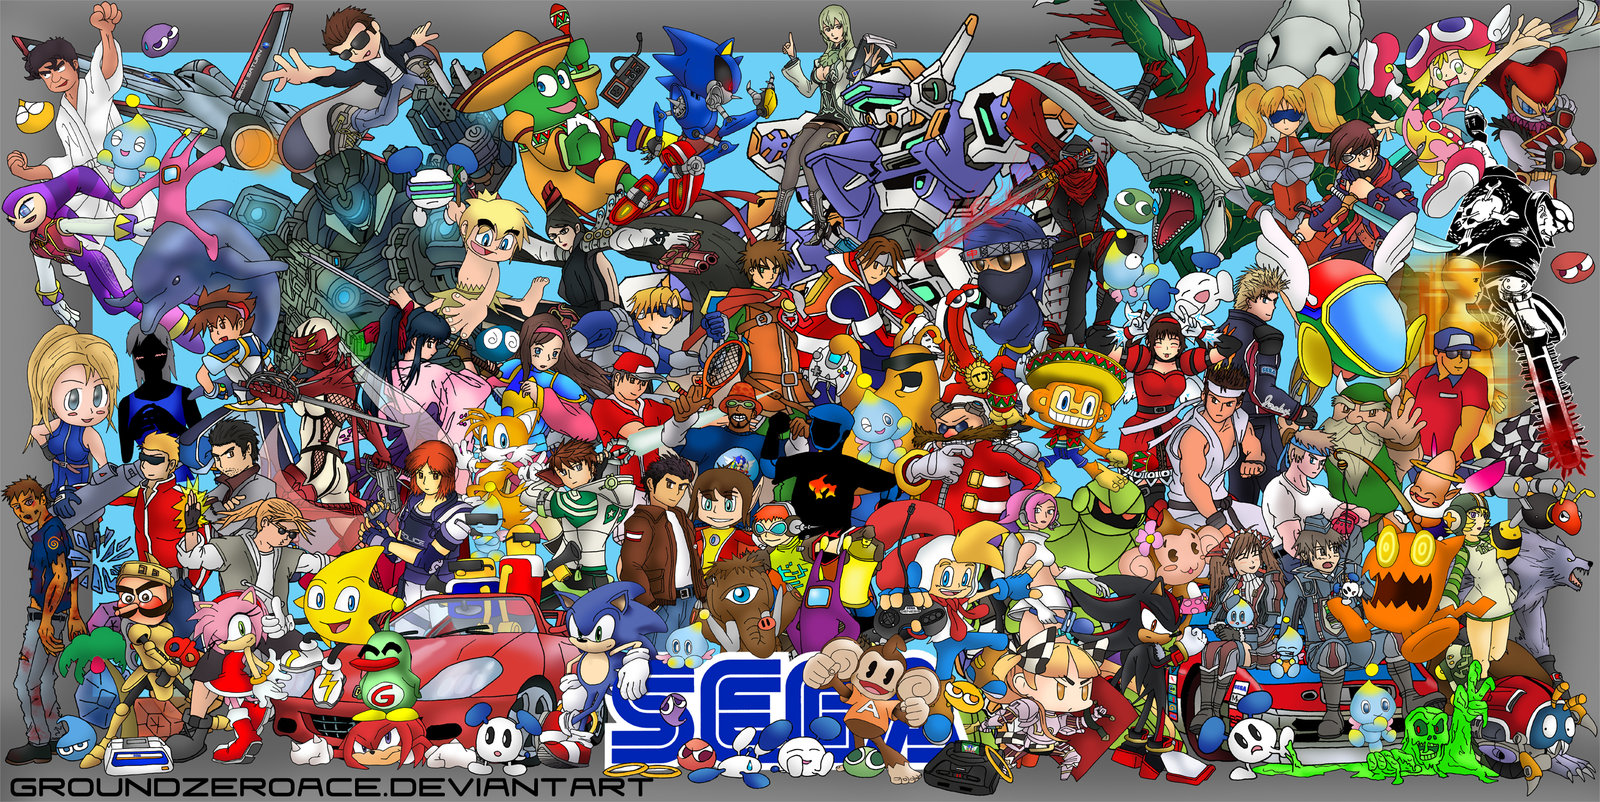 Groundzeroace Deviantart Art Sega All Stars Reunion